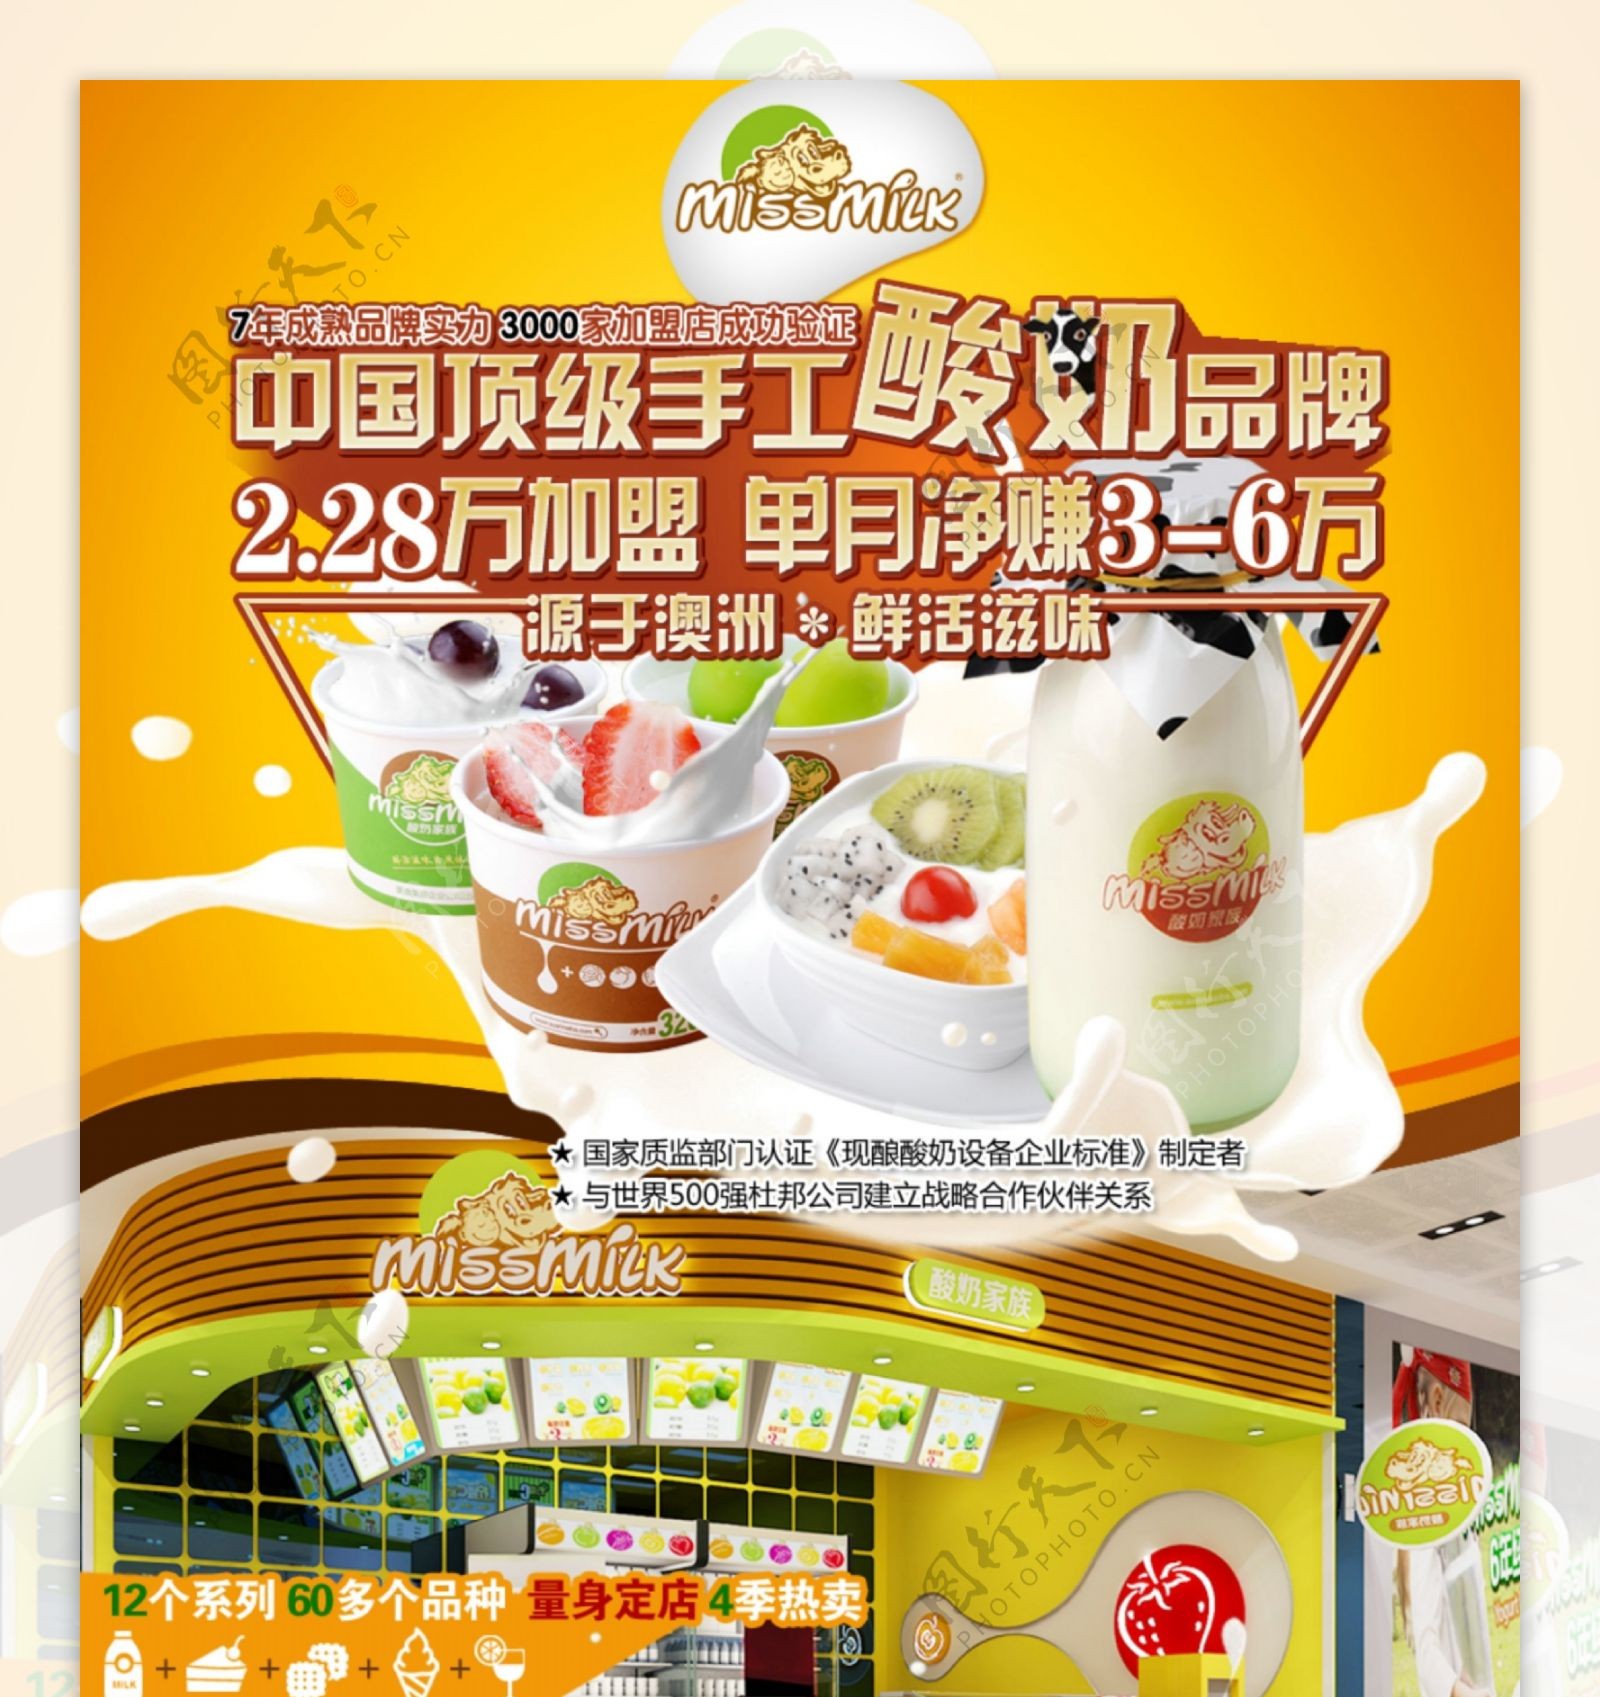 美食美客酸奶招商加盟页面设计图片